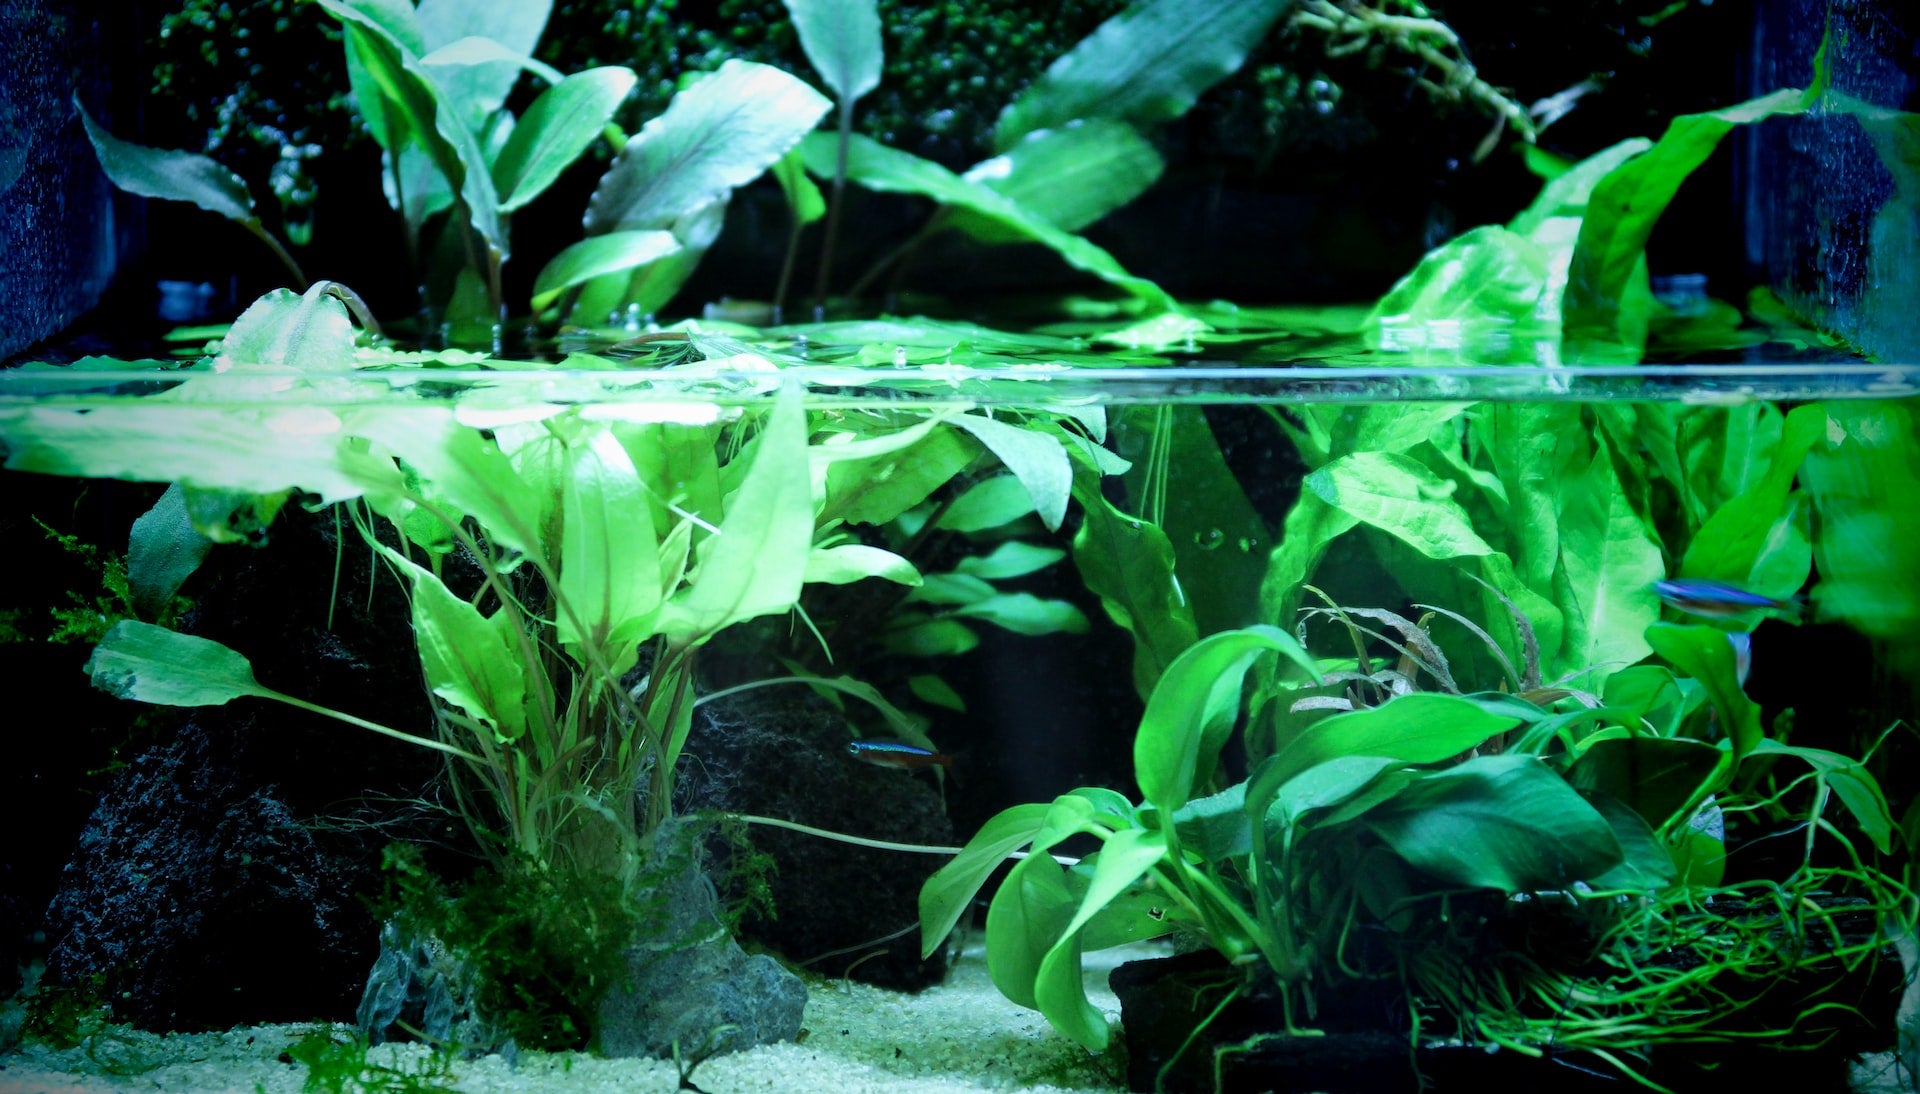 aquatic plants